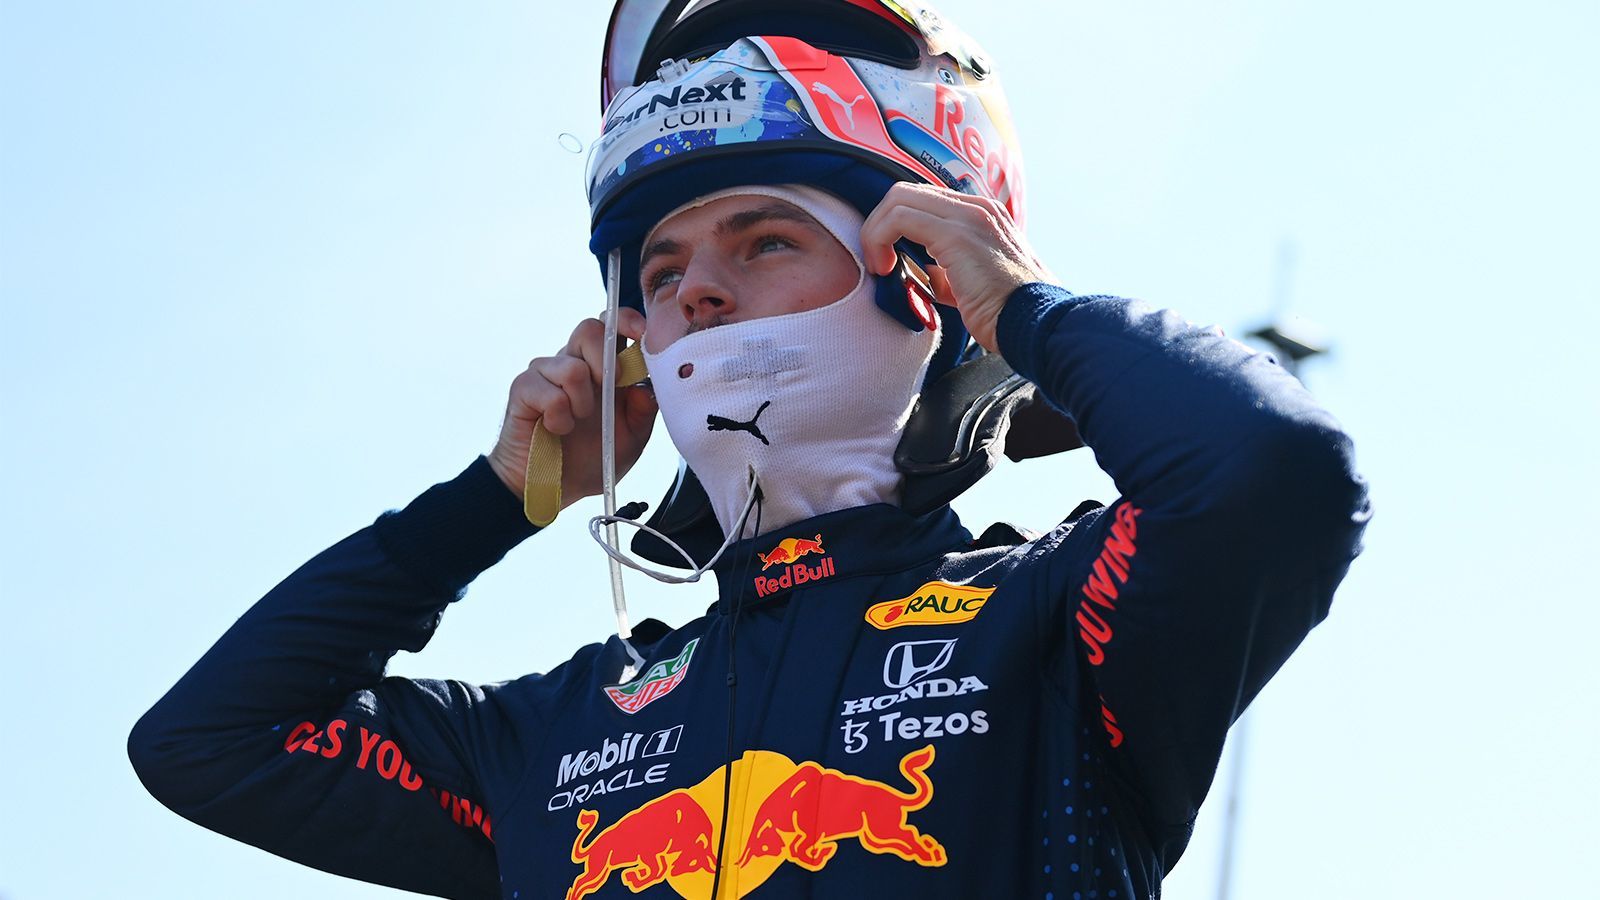 Макс Ферстаппен признан лучшим пилотом «Формулы-1» в 2021 году по версии руководителей команд